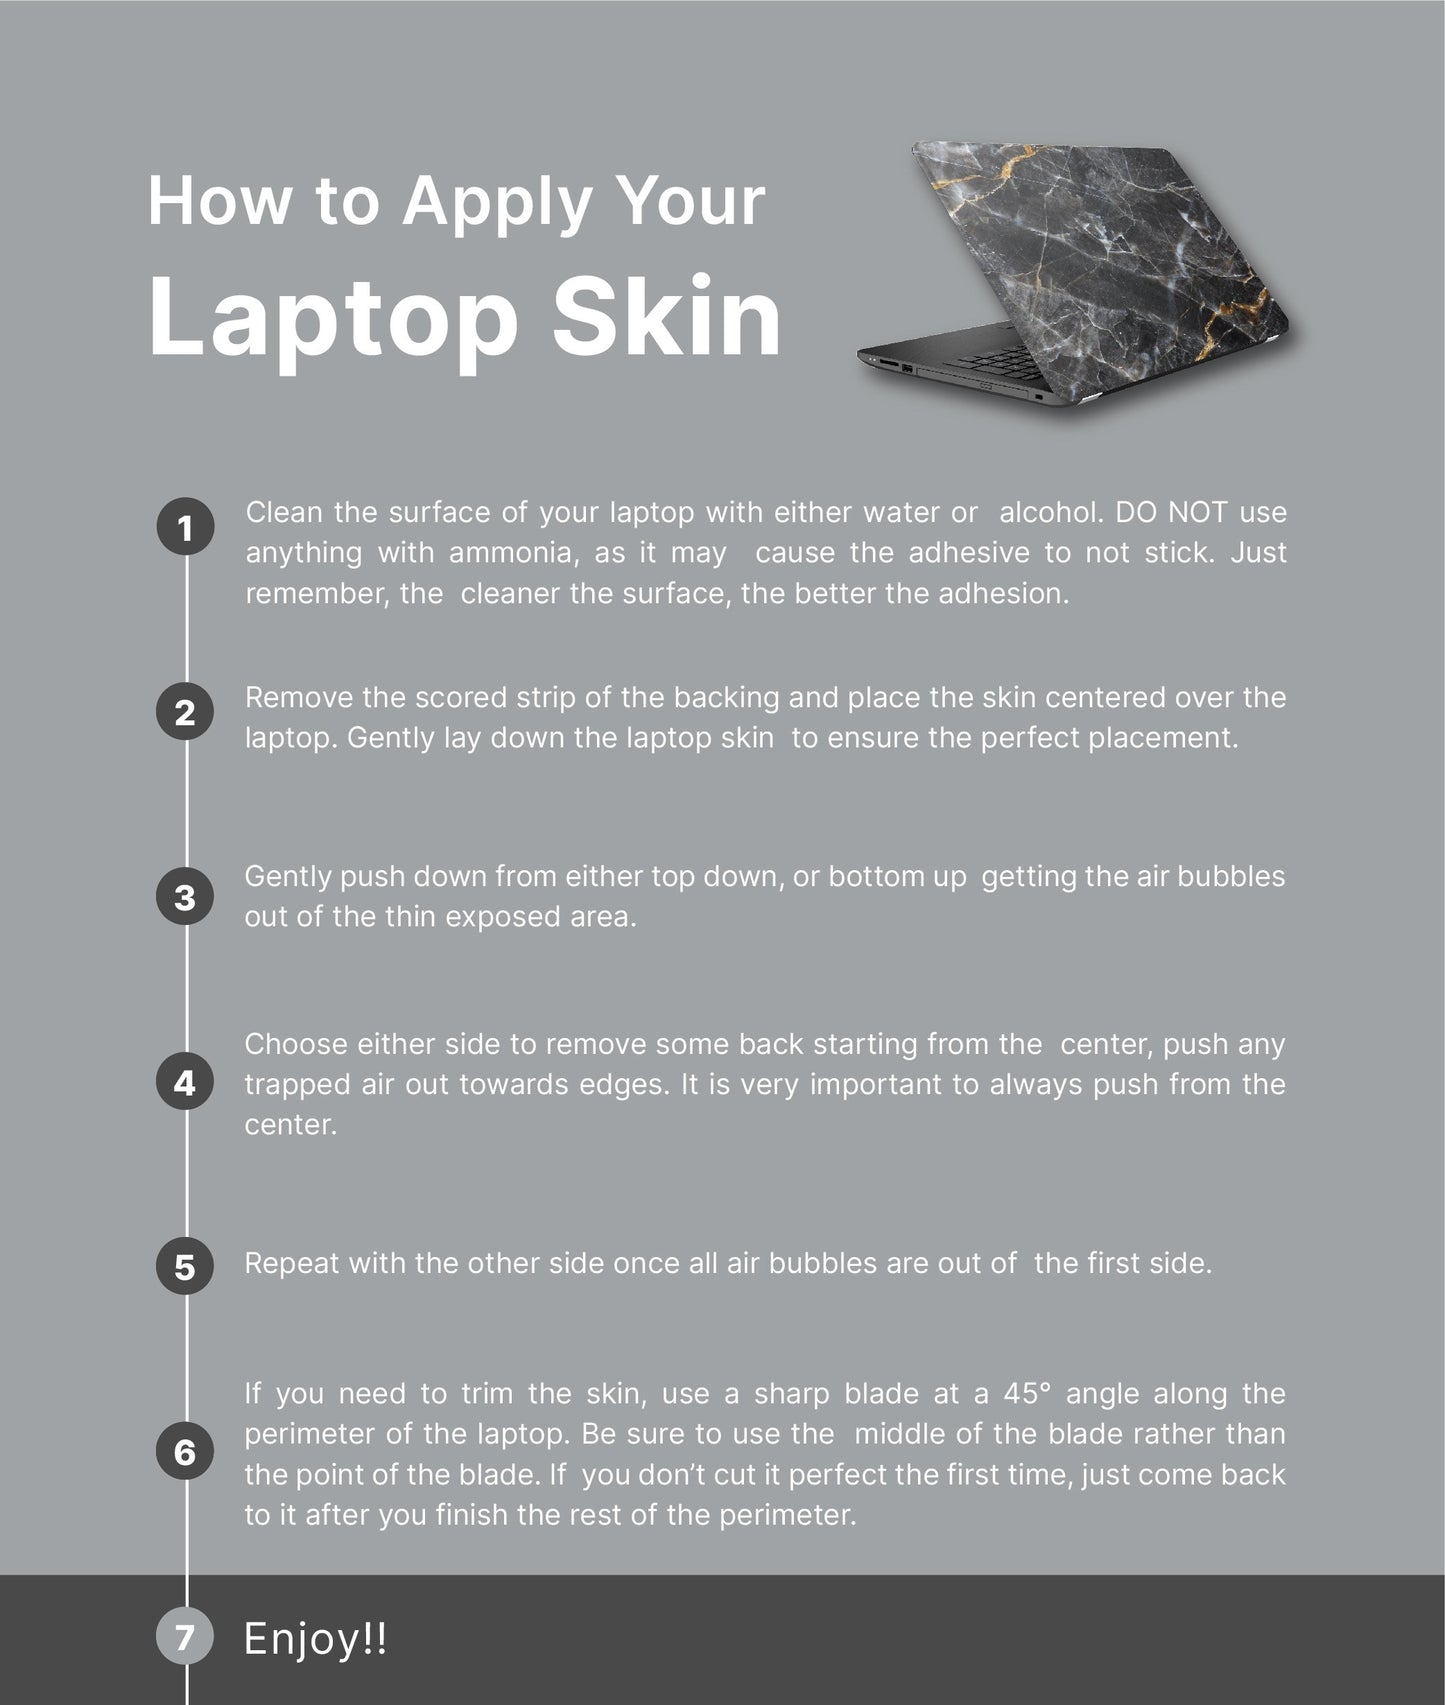 Pastel Watercolor Laptop Skin, Laptop Cover, Laptop Skins, Removable Laptop Skins, Laptop Decal, Customized Laptop Skin, Laptop Stickers 318